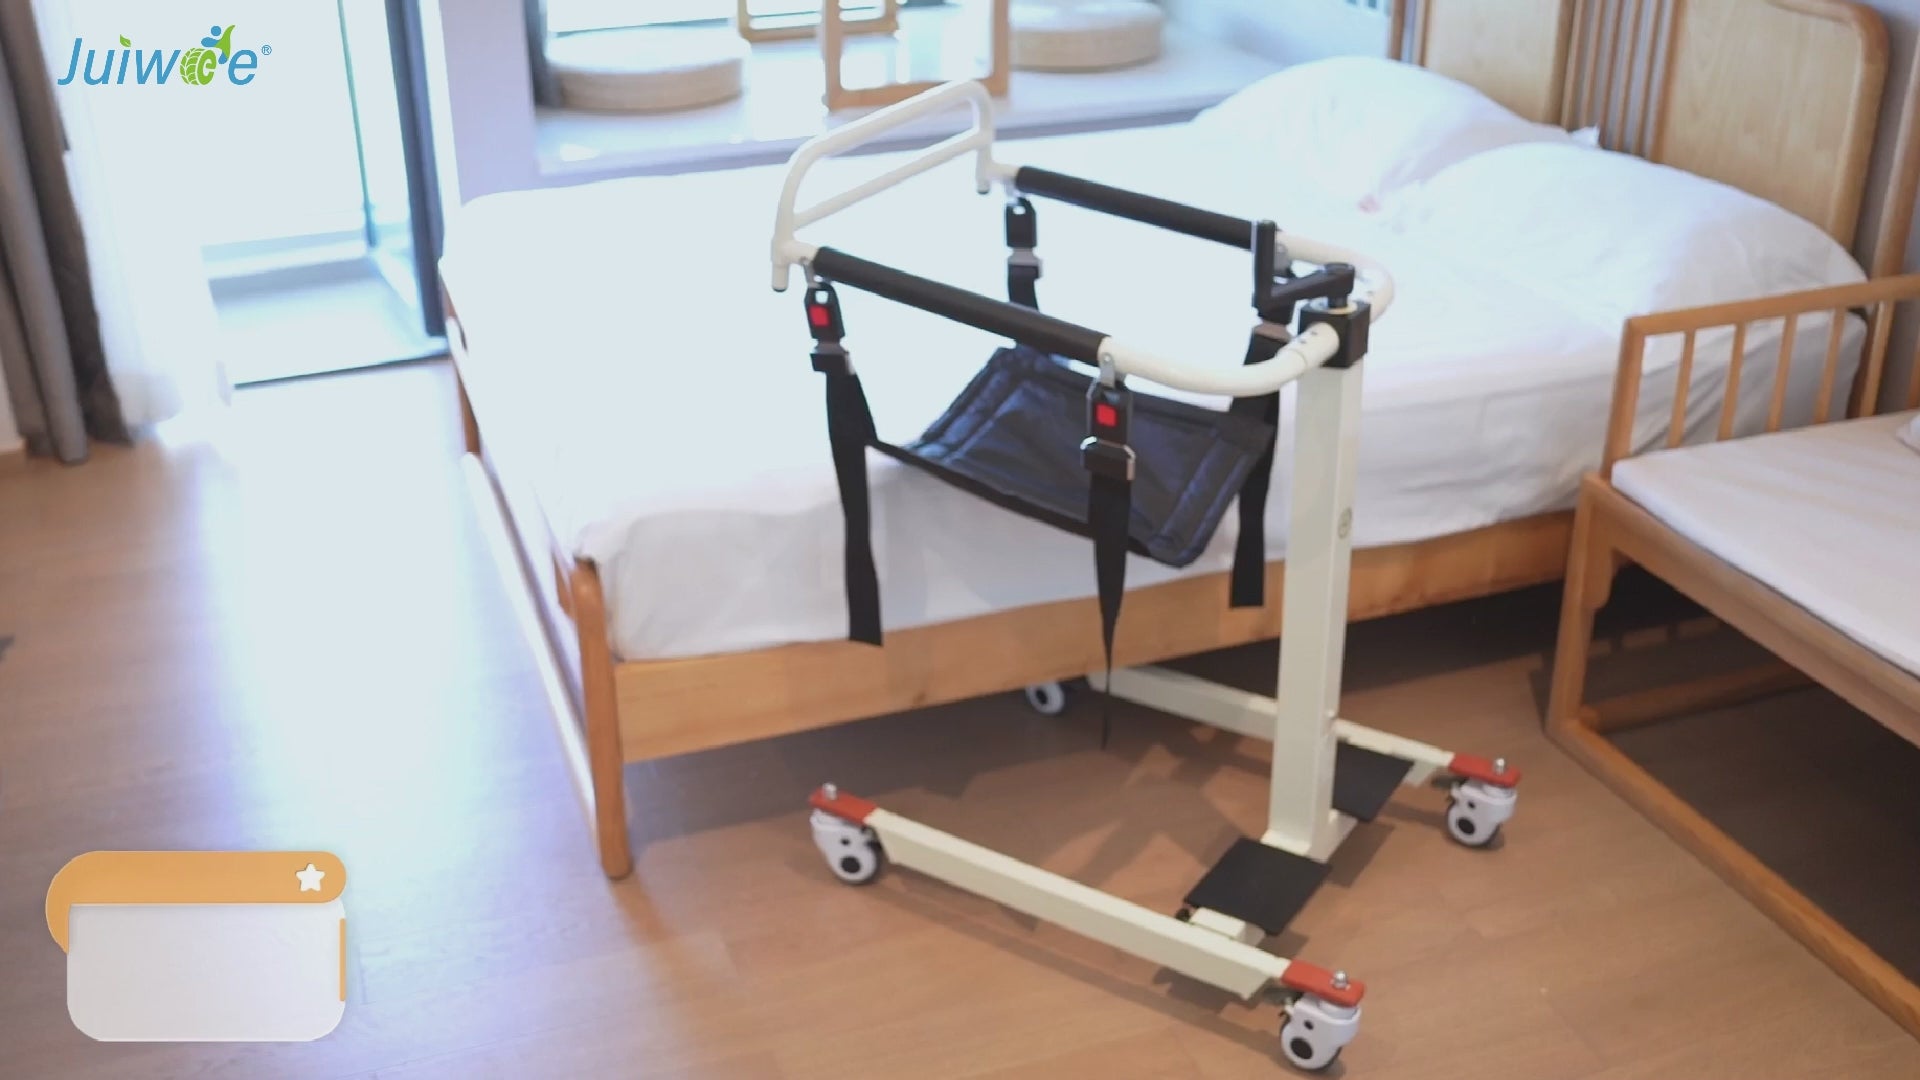 Patient Lift Transfer Chair Wheelchair Lightweight Rolling Shower Chai –  xiaohaha